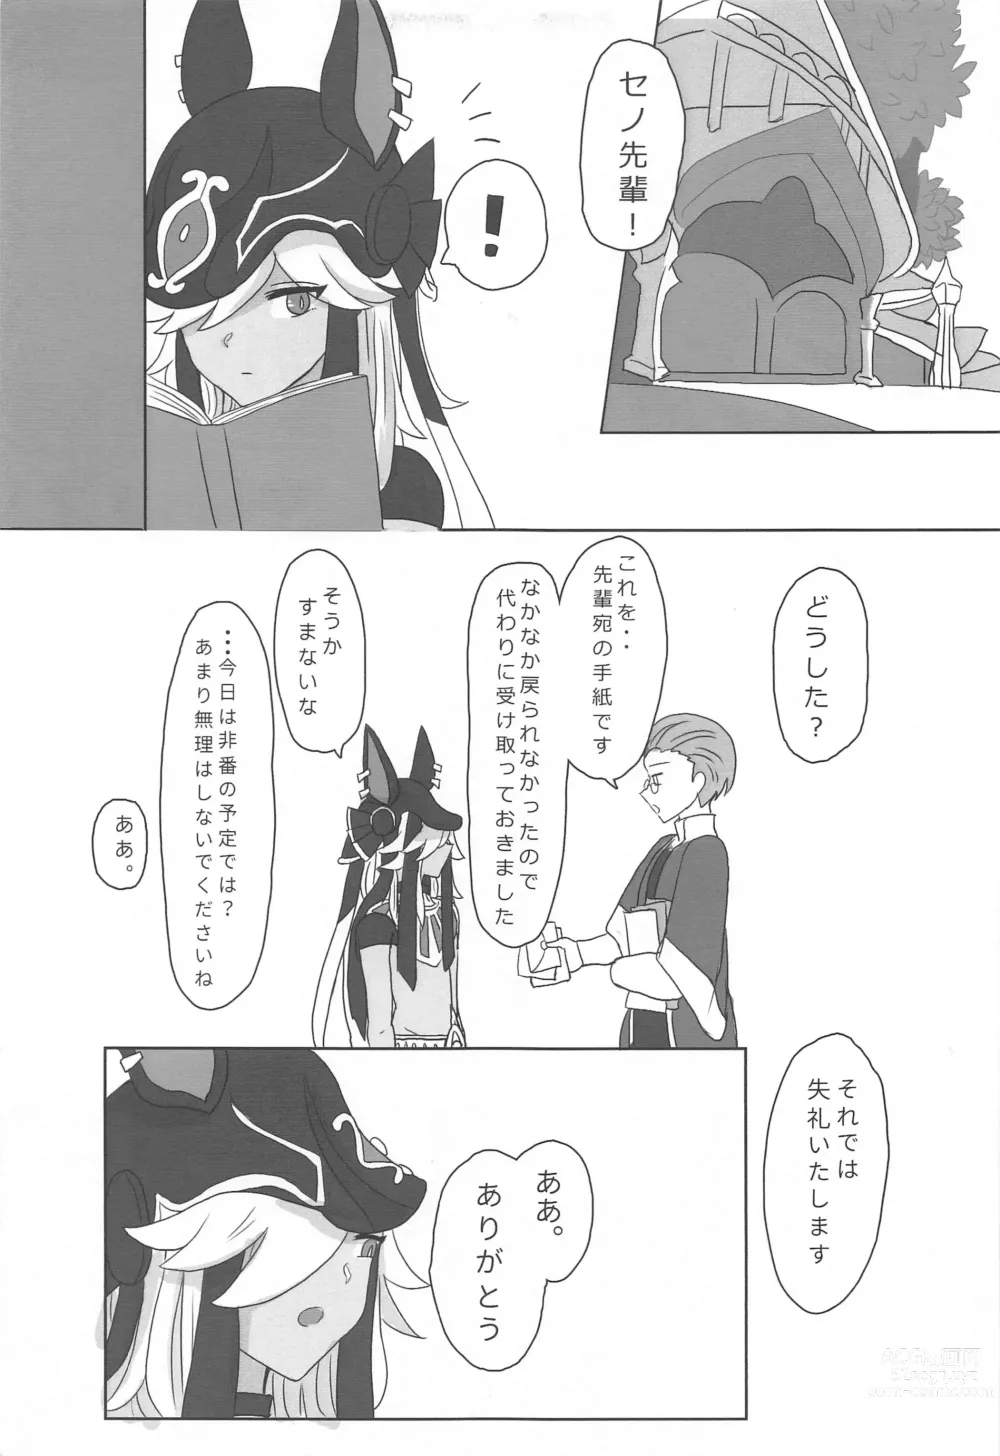 Page 4 of doujinshi Kimi ga Nozomu nara